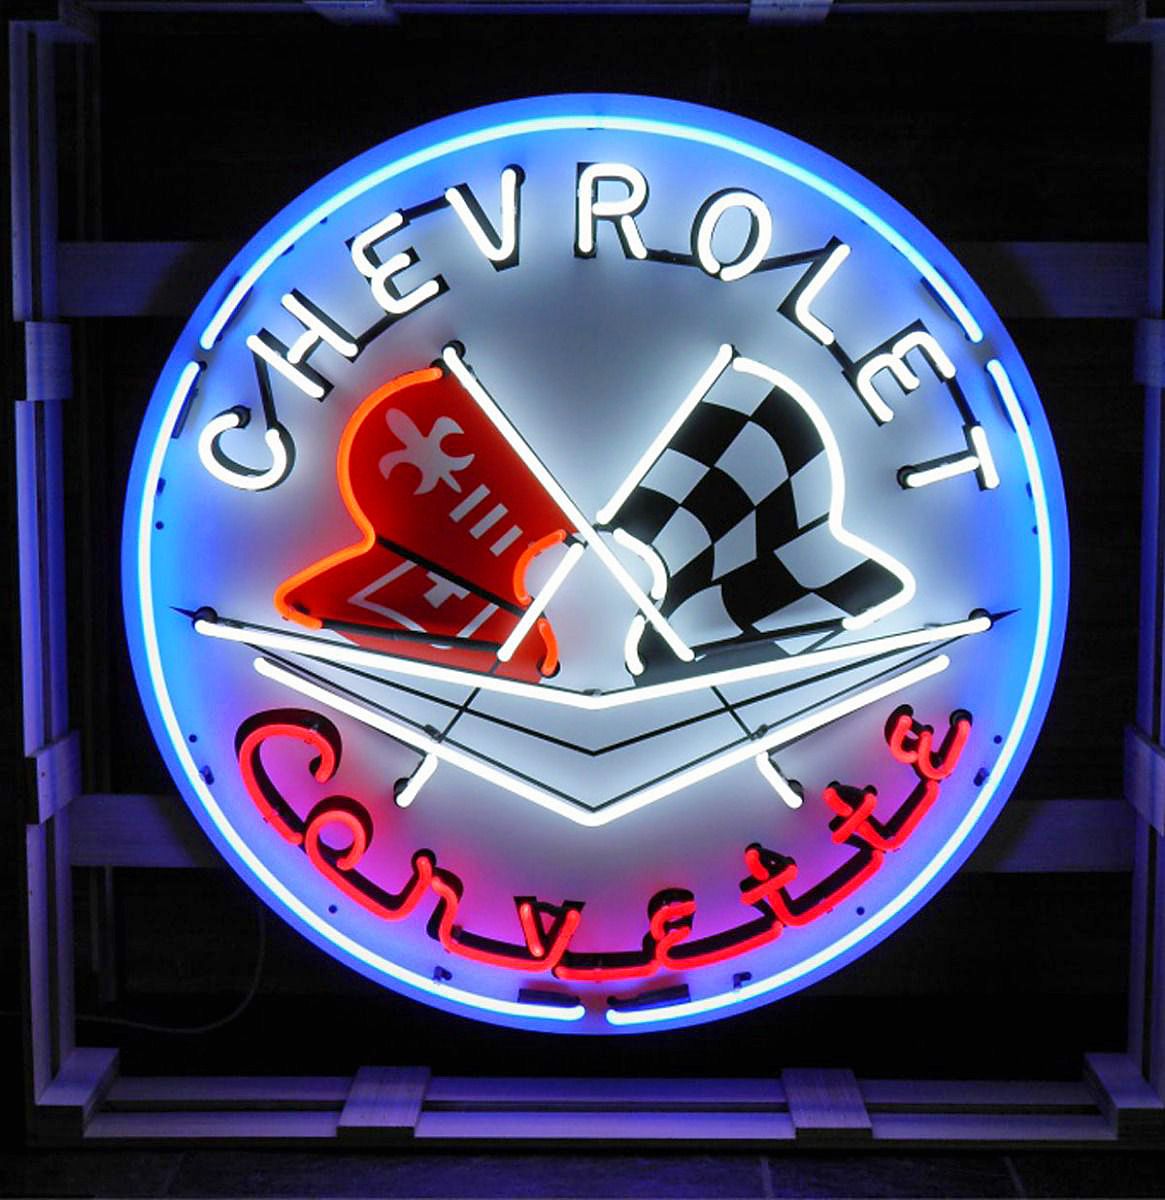 Chevrolet Corvette Neon Sign